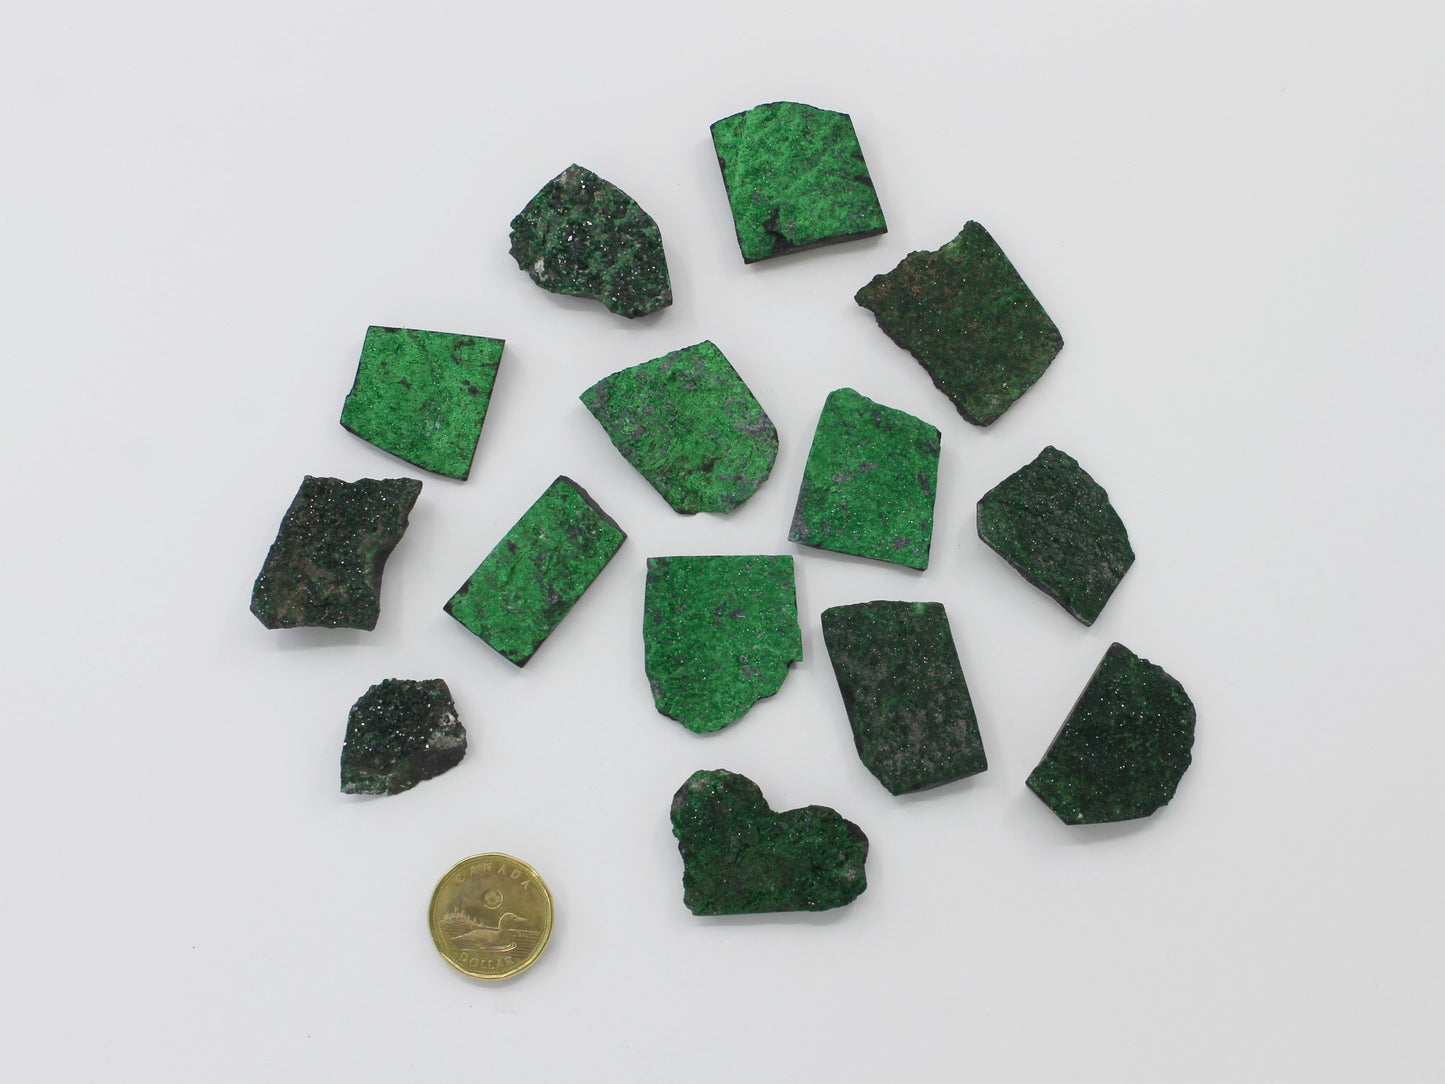 Uvanovite (Green Garnet) - Mineral Specimen